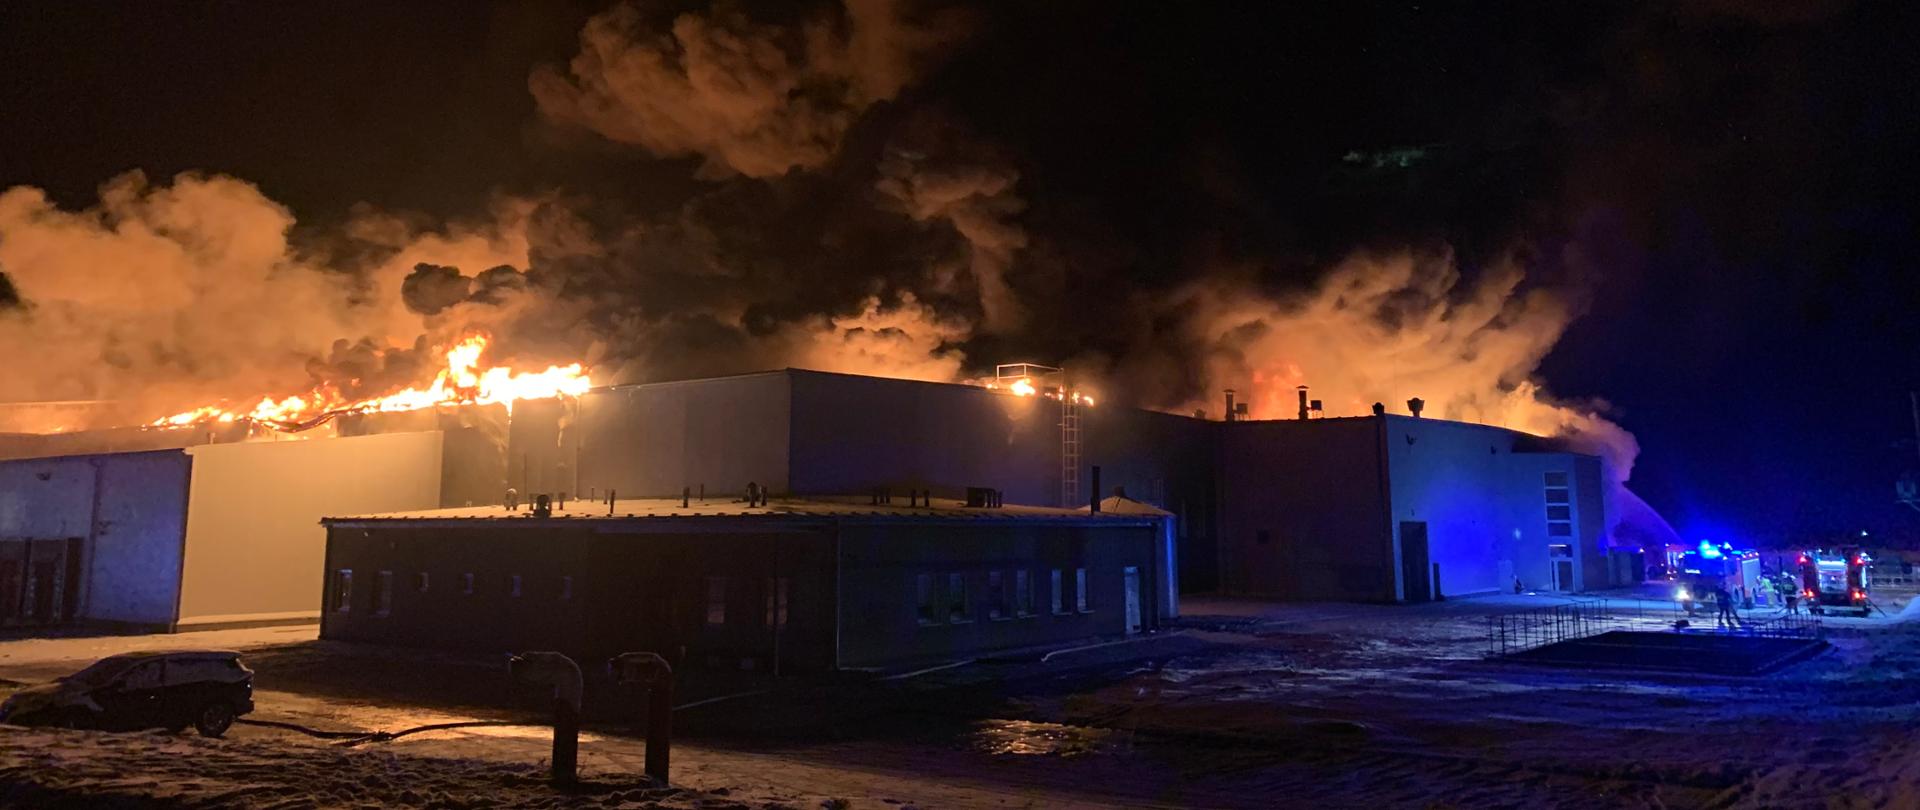 Zdjęcie zrobione w nocy, które przedstawia palącą się halę produkcyjną (perspektywa z zewnątrz). U góry hali widać wydostające się języki ognia oraz ogromne kłęby dymu. Z prawej strony zdjęcia widać w oddali trzy samochody strażackie oraz strażaków podczas akcji.